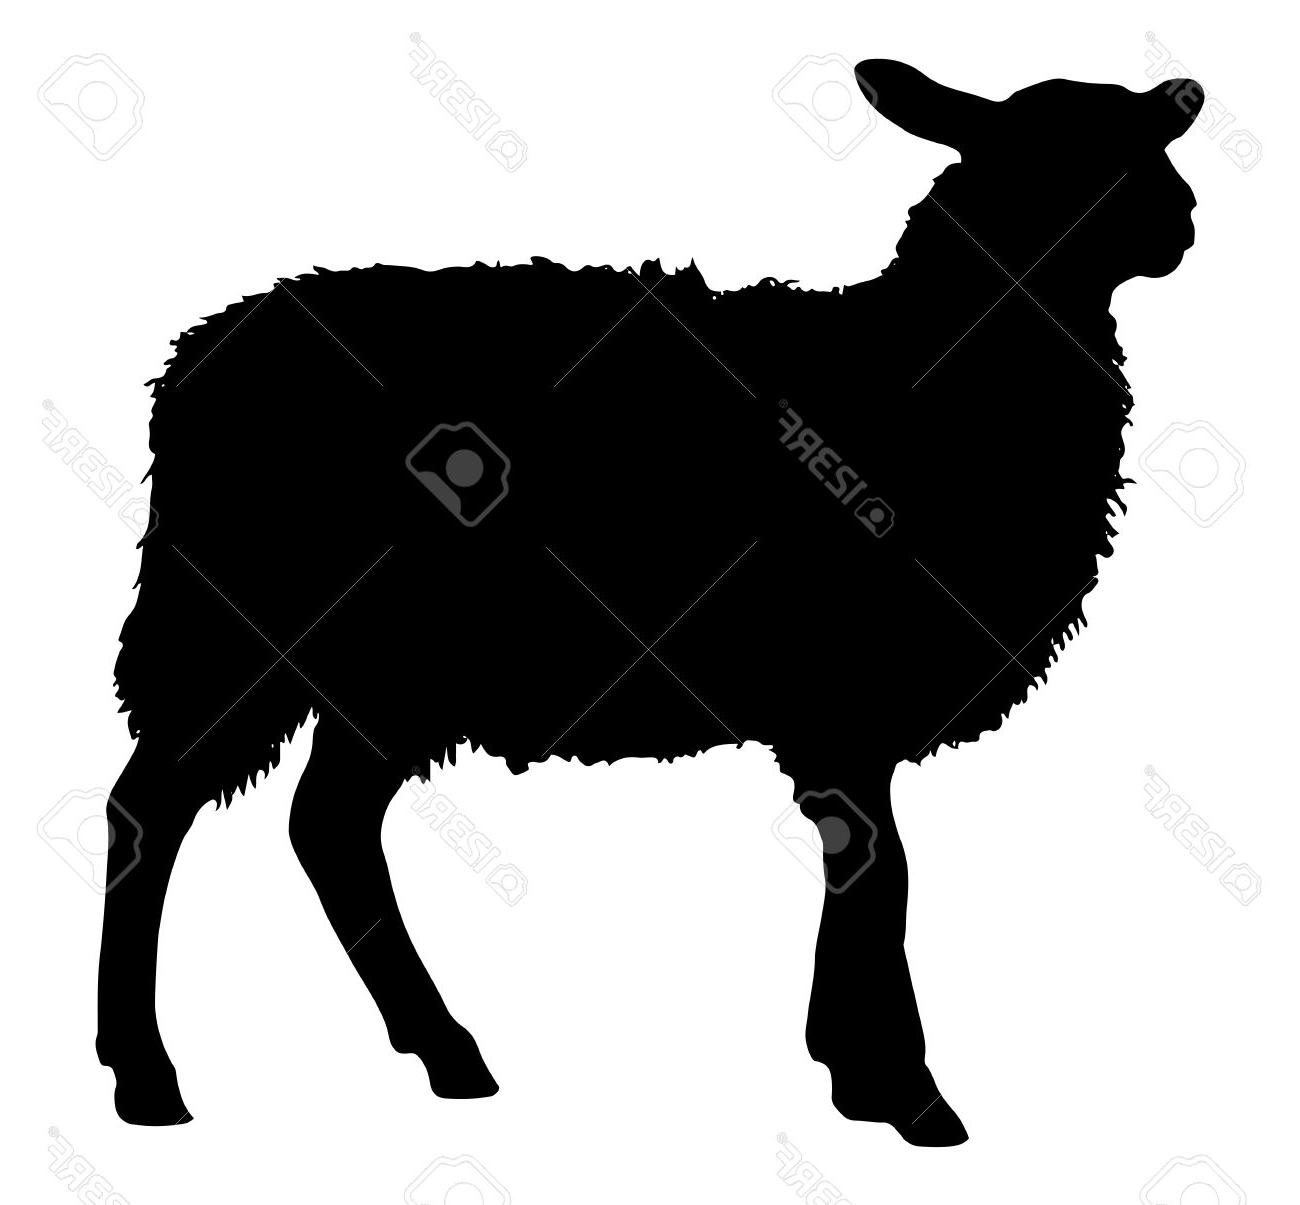 Unique sheep silhouette.